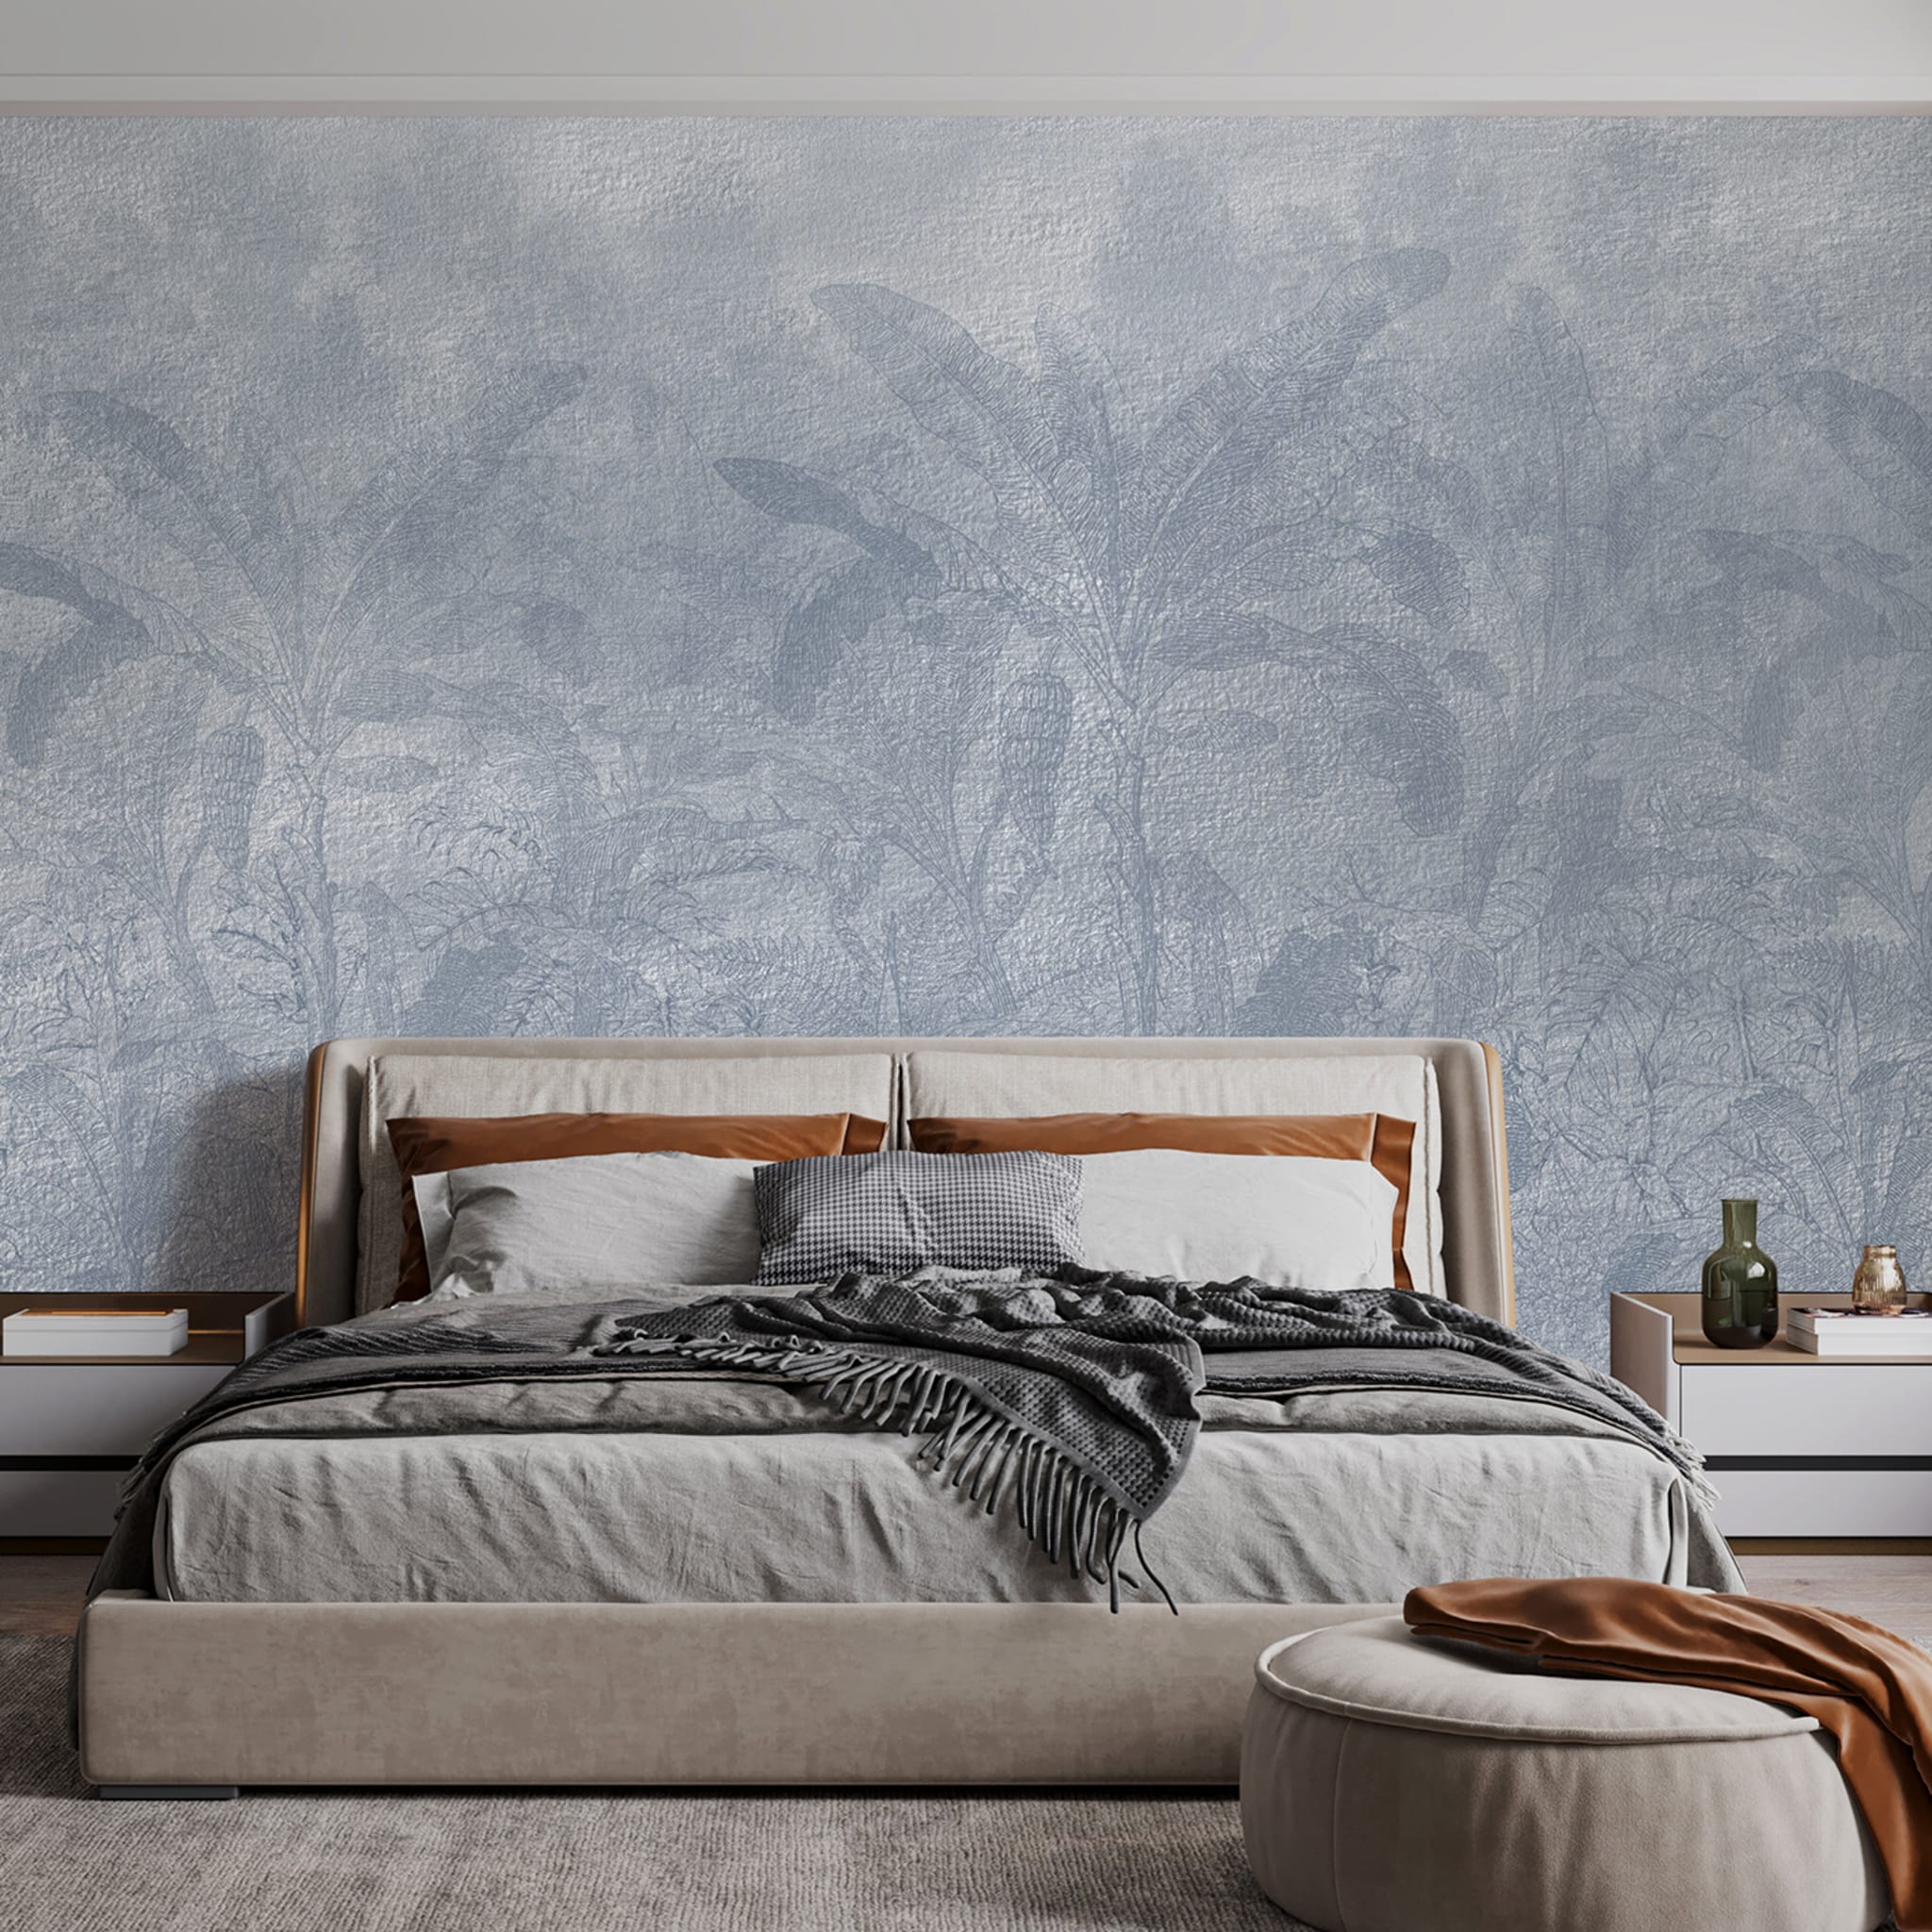 Light blue Tropical forest textured wallpaper - Alternative view 1